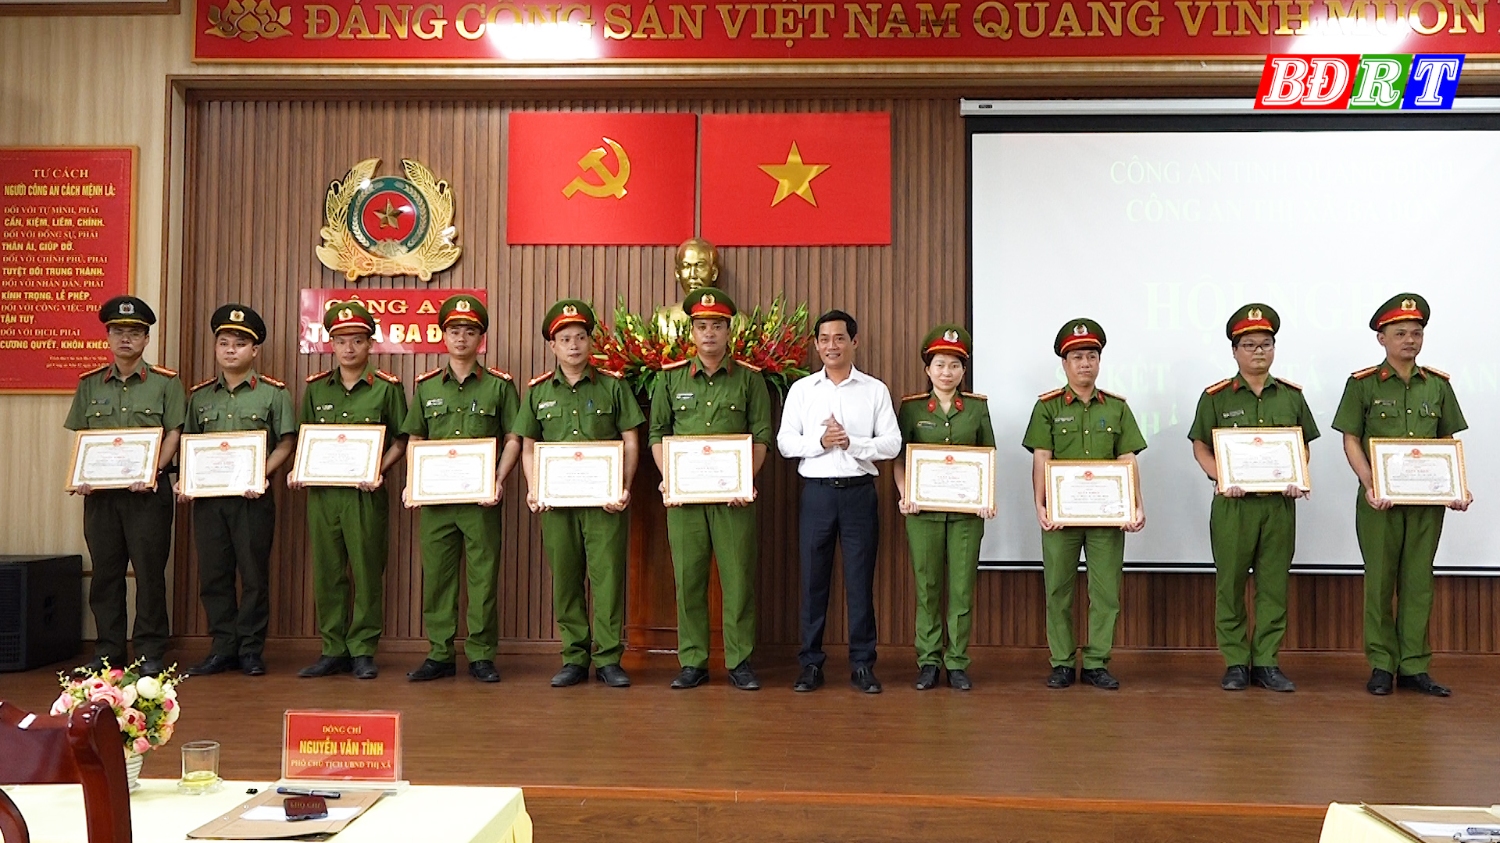 Các cá nhân vinh dự được nhận giấy khen của UBND thị xã Ba Đồn